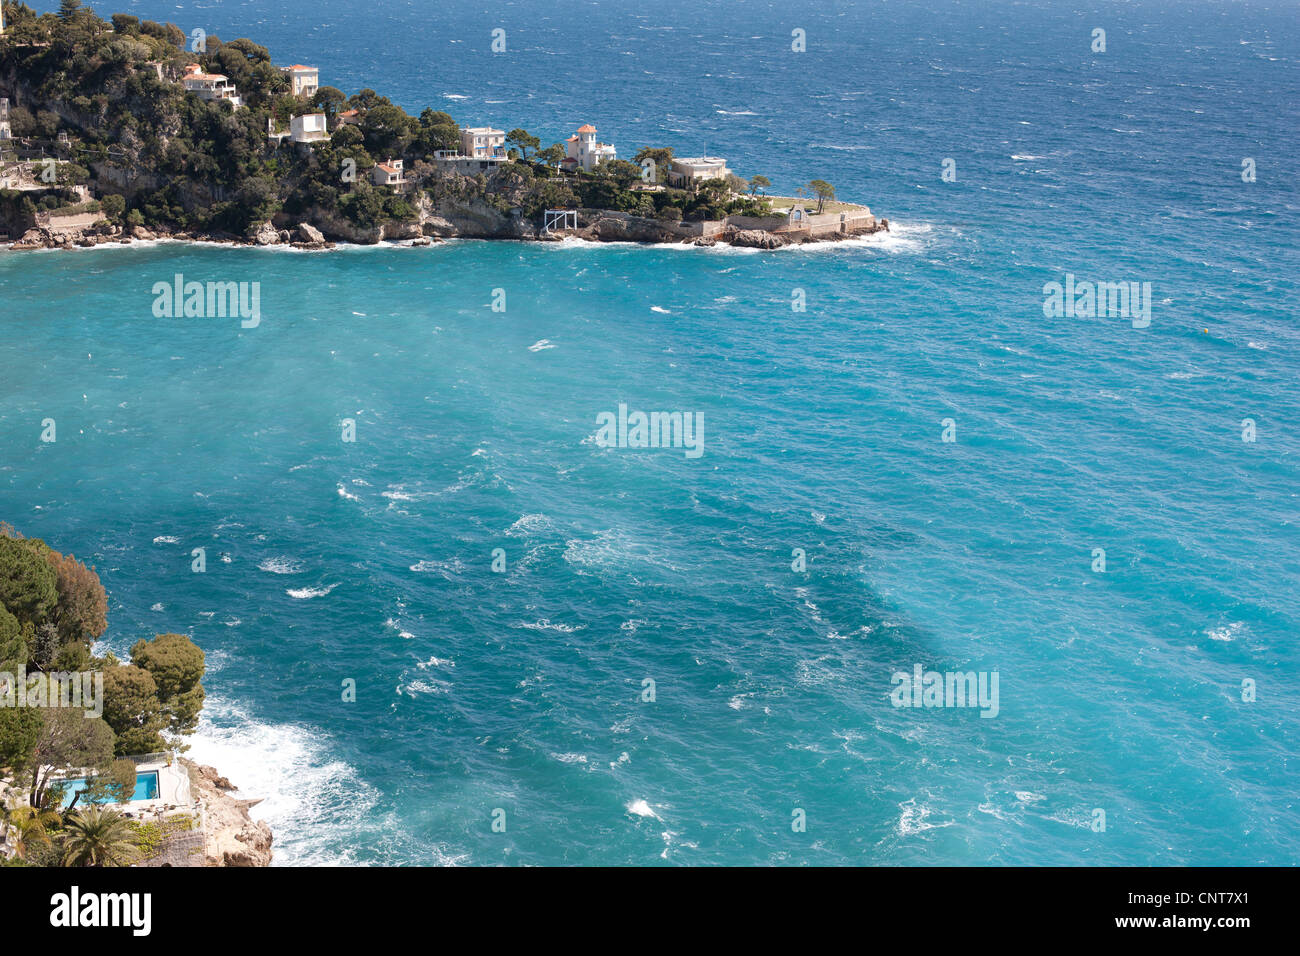 Promontoire des Rocheuses avec villas luxueuses sur la côte azur de la méditerranée.Cap Mala, Cap d'ail, Côte d'Azur, France. Banque D'Images